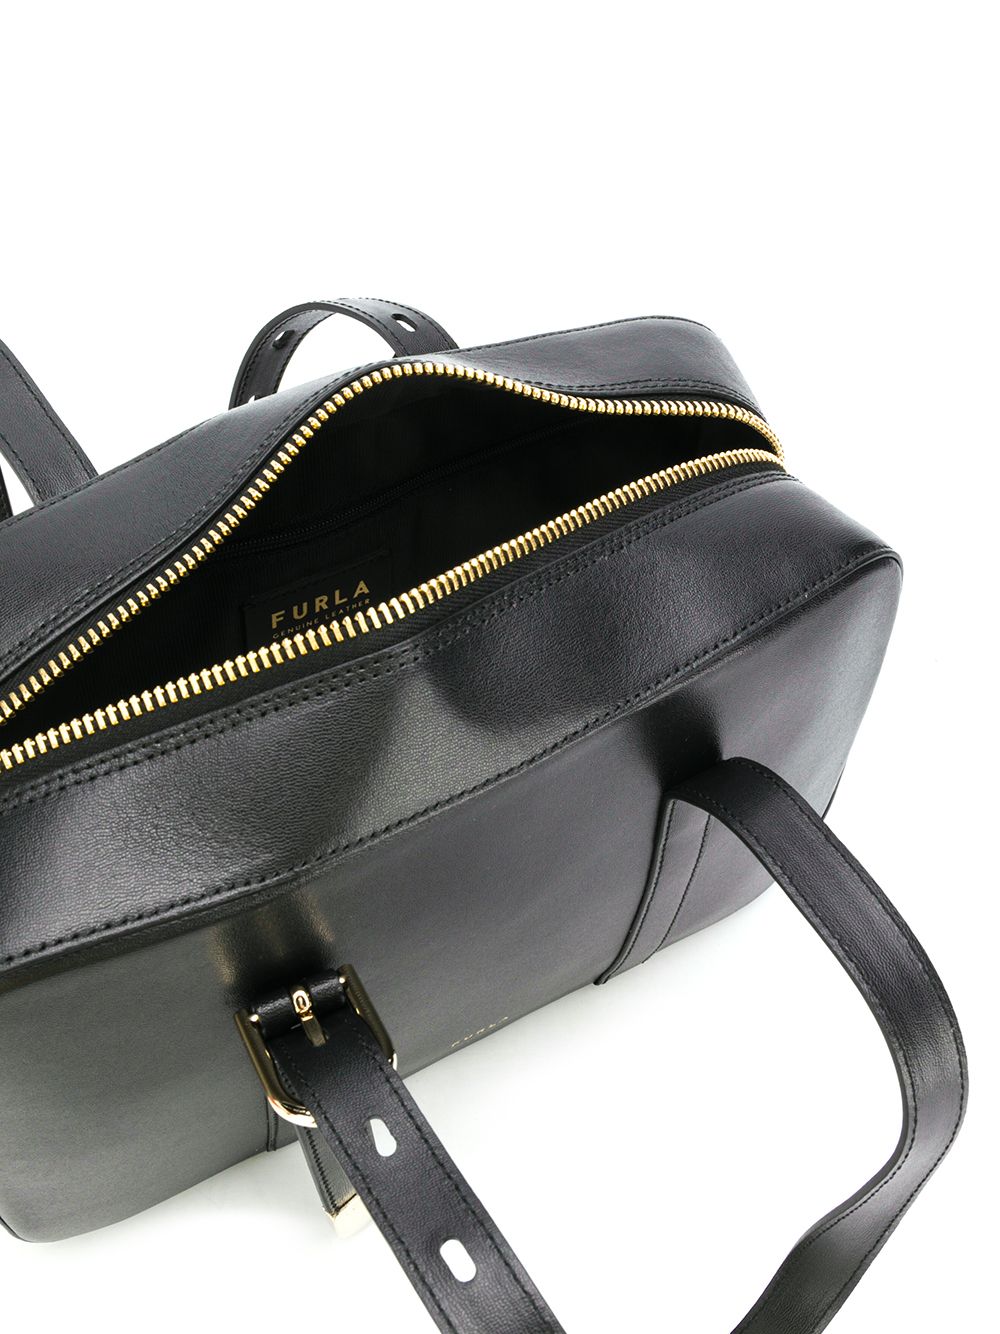 фото Furla структурированная сумка на плечо